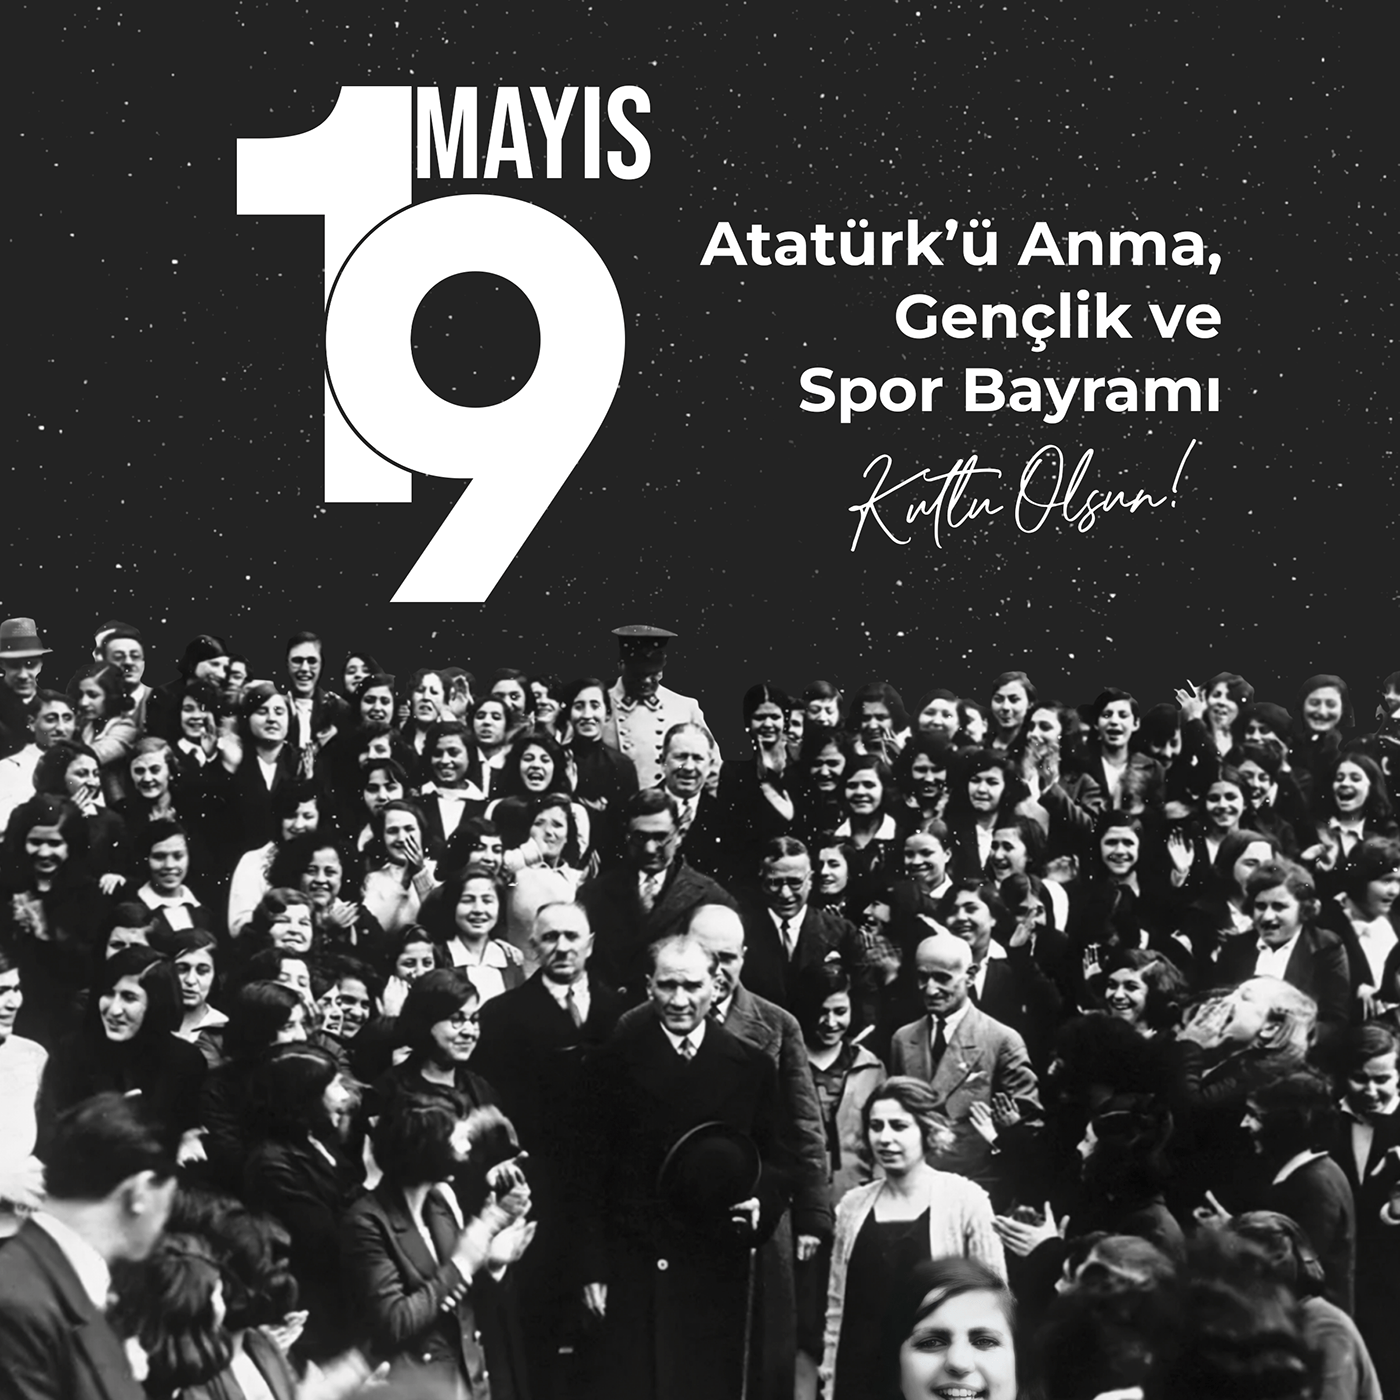 19 mayıs 19 Mayıs 1919 Ataturk bandırma bayram Mustafa Kemal Atatürk sosyal medya Turkey türkiye